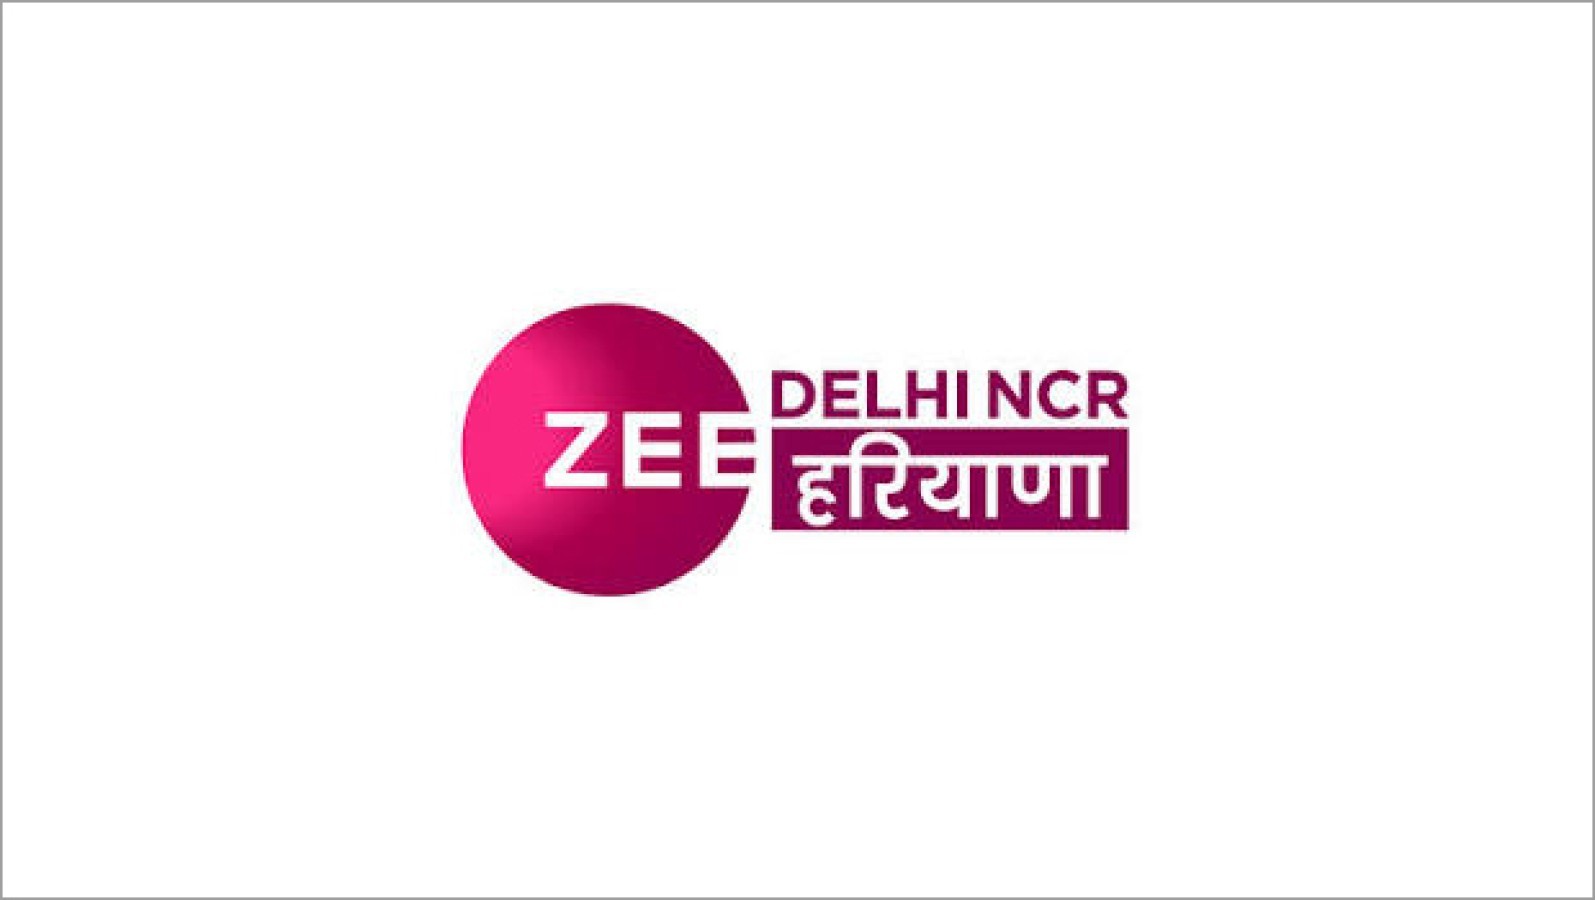 Zee Delhi NCR Advertising